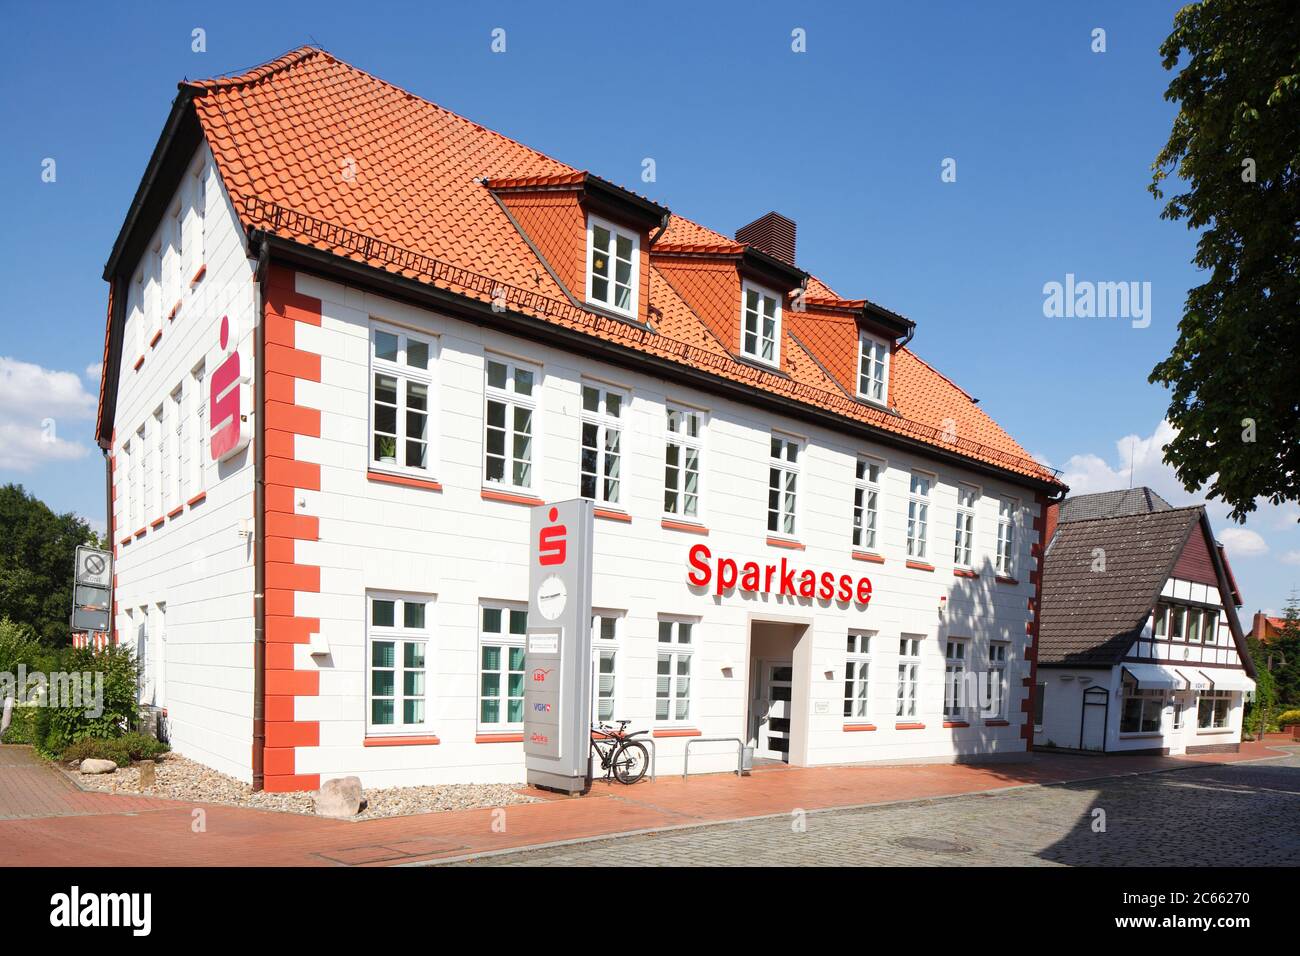 Sparkasse building in Vilsen, Bruchhausen-Vilsen, Lower Saxony, Germany, Europe Stock Photo